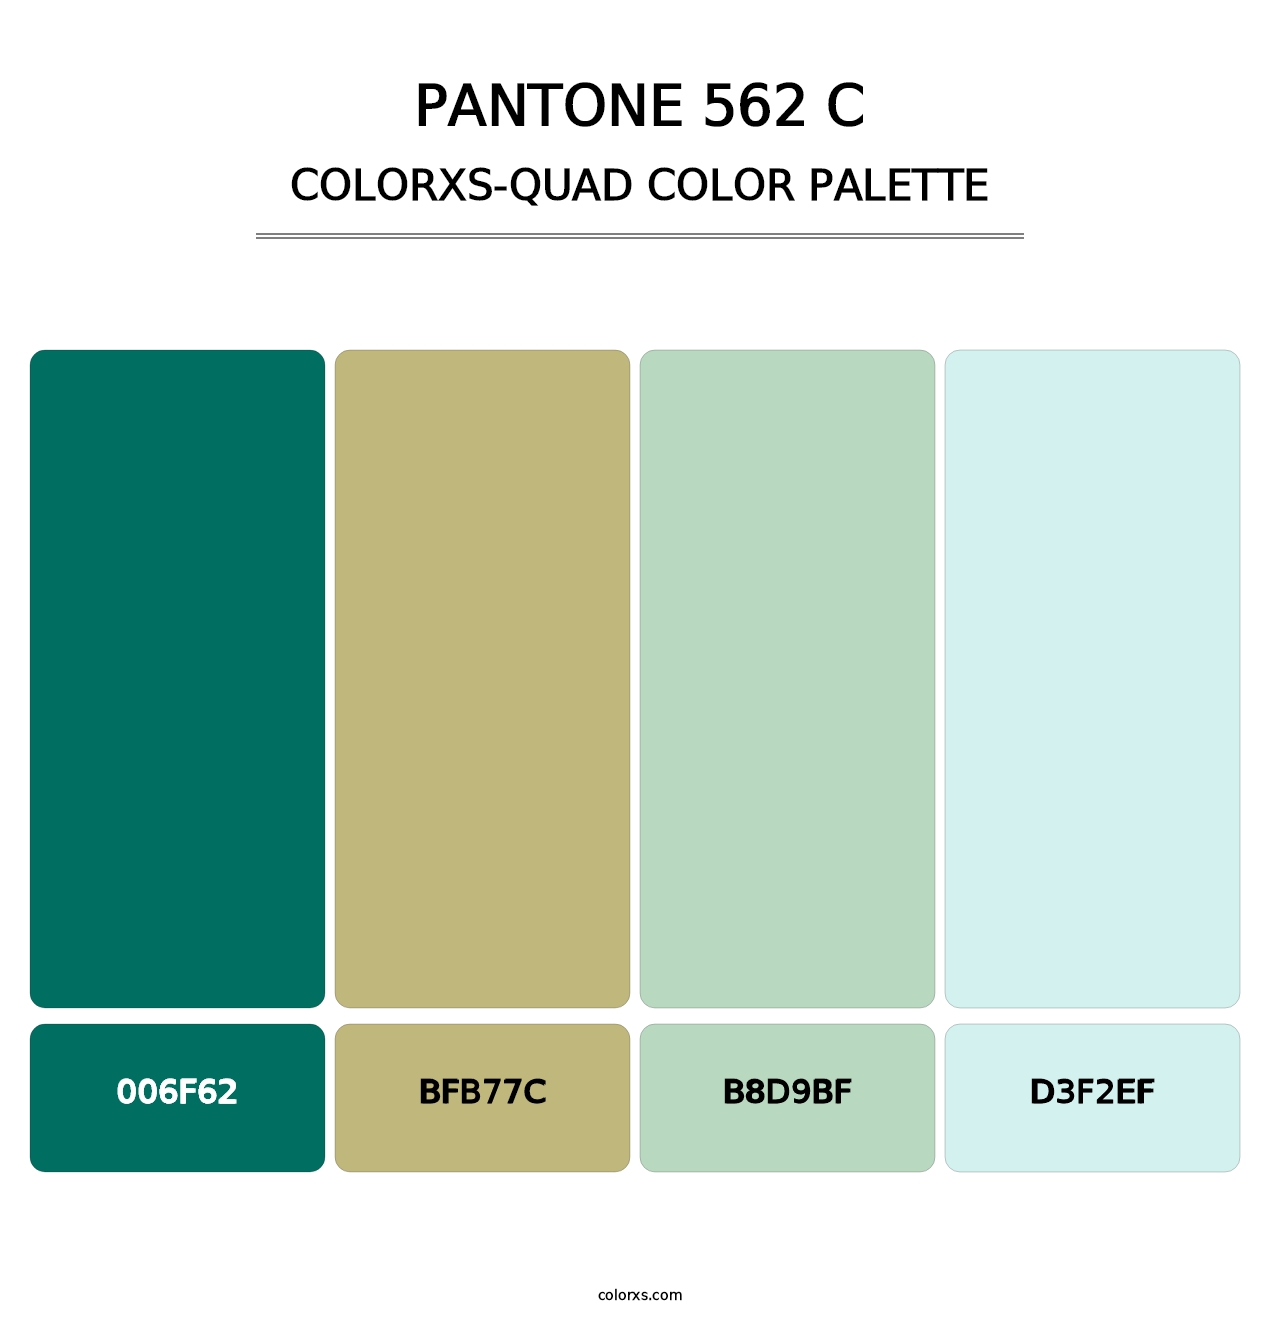 PANTONE 562 C - Colorxs Quad Palette